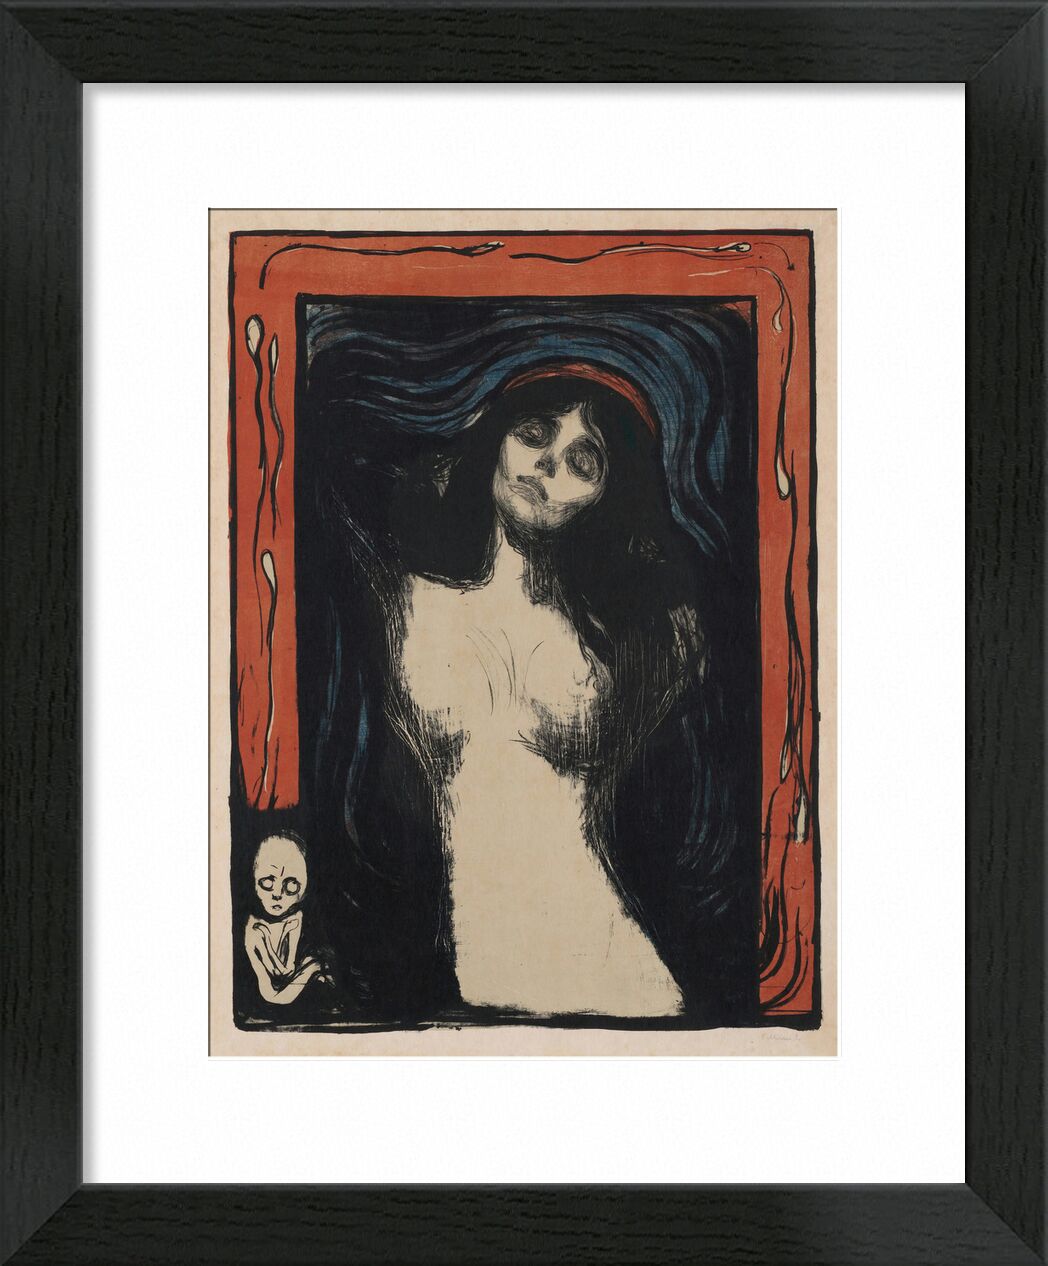 Madonna II - Edvard Munch von Bildende Kunst, Prodi Art, Edvard Munch, nackt, Frau, Zeichnung, Schwangerschaft